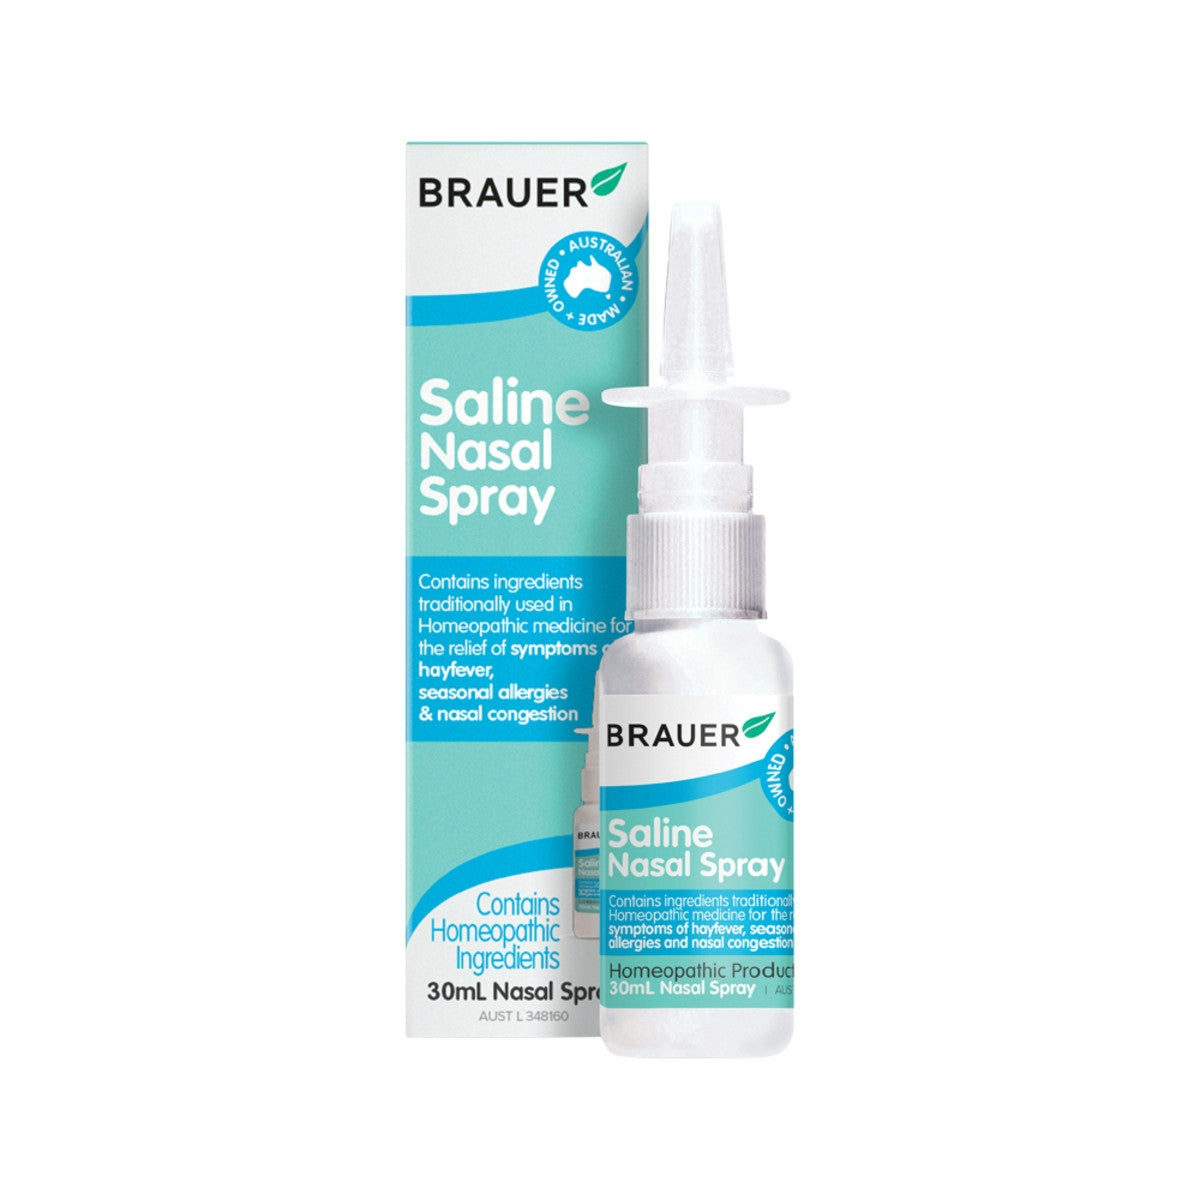 image of Brauer Saline Nasal Spray 30ml on white background 